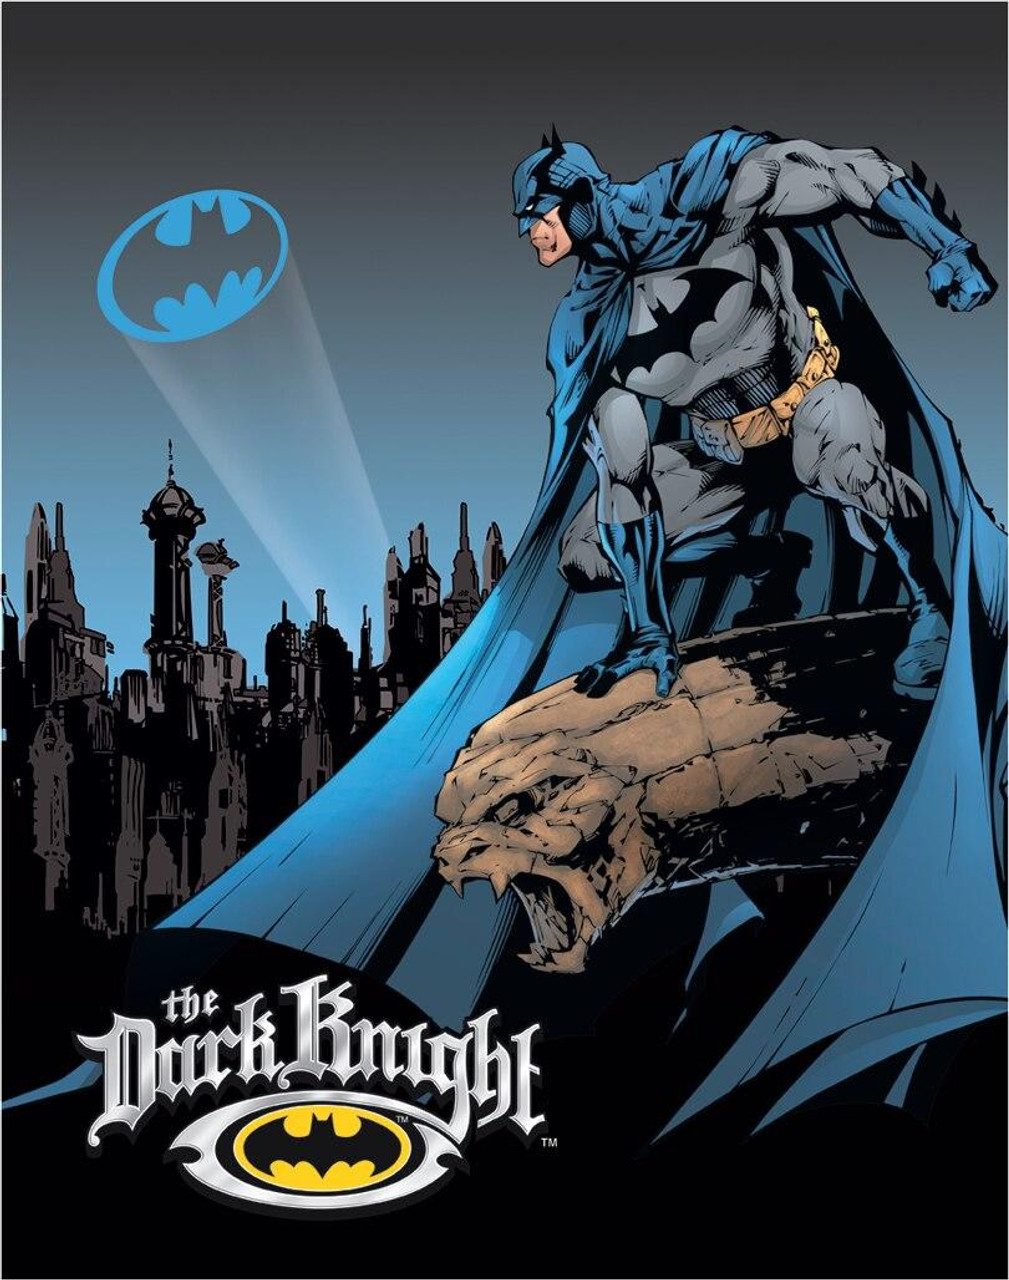 Fumetti Dc Comics  Dark knight, Batman the dark knight, Batman art